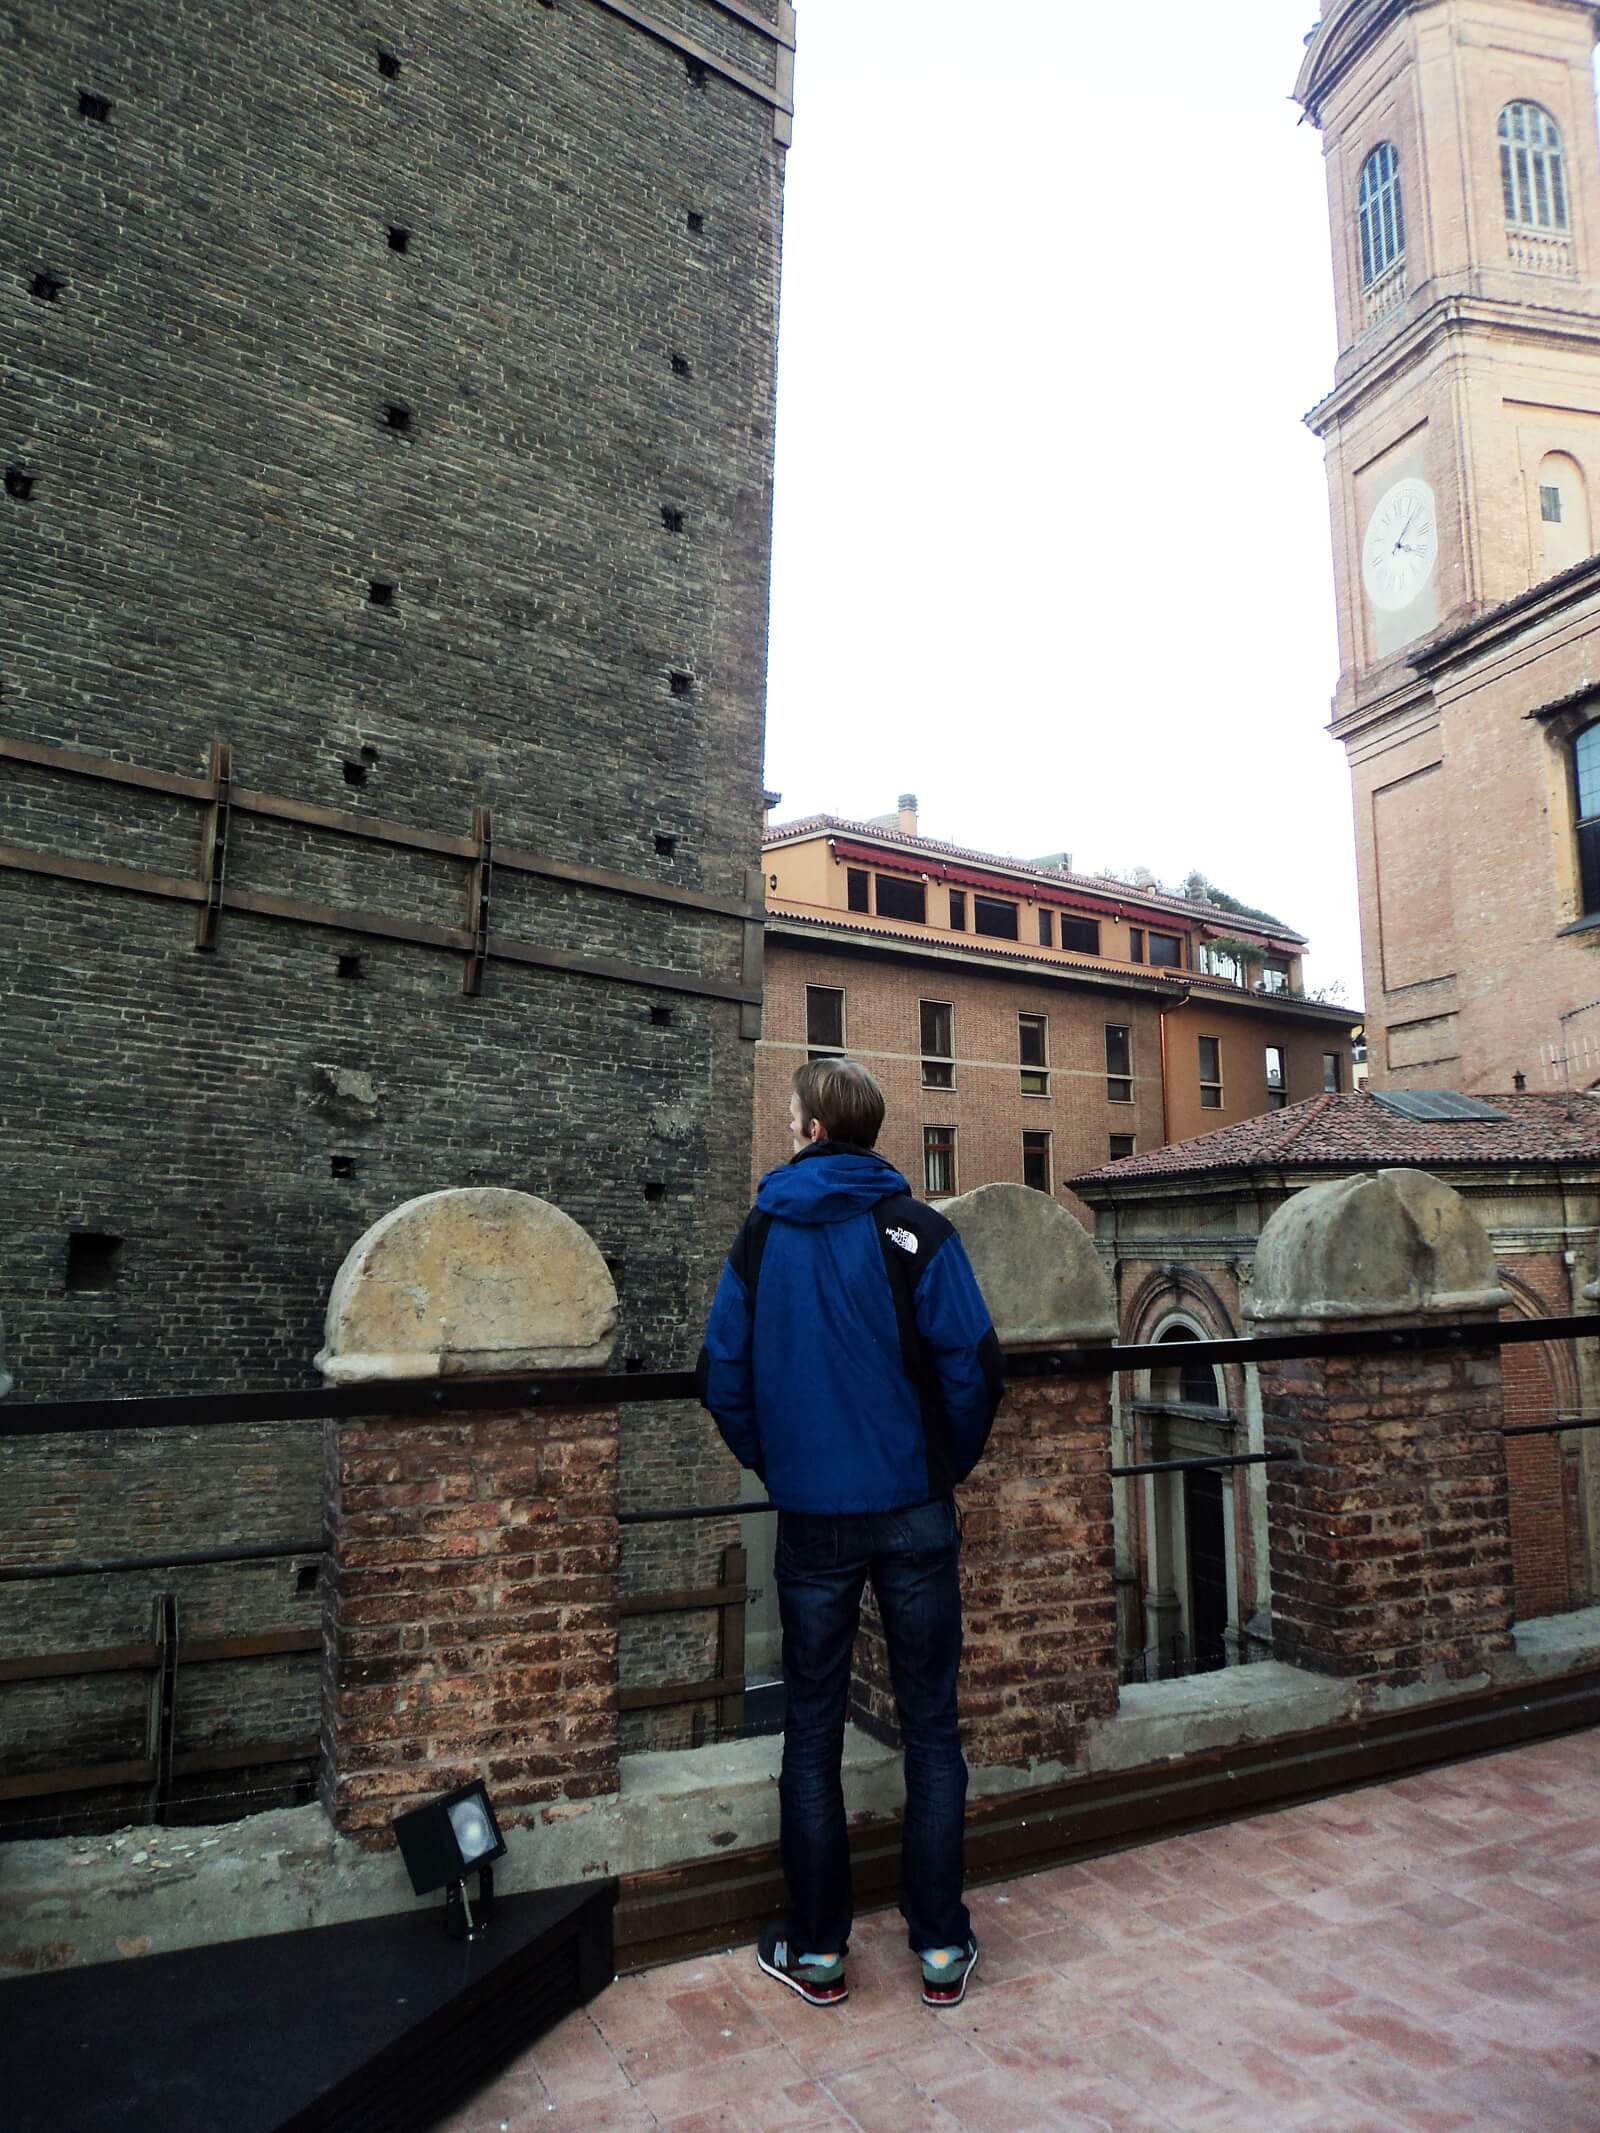 Bezienswaardigheden Bologna - Toren Asinelli en de Due Torri